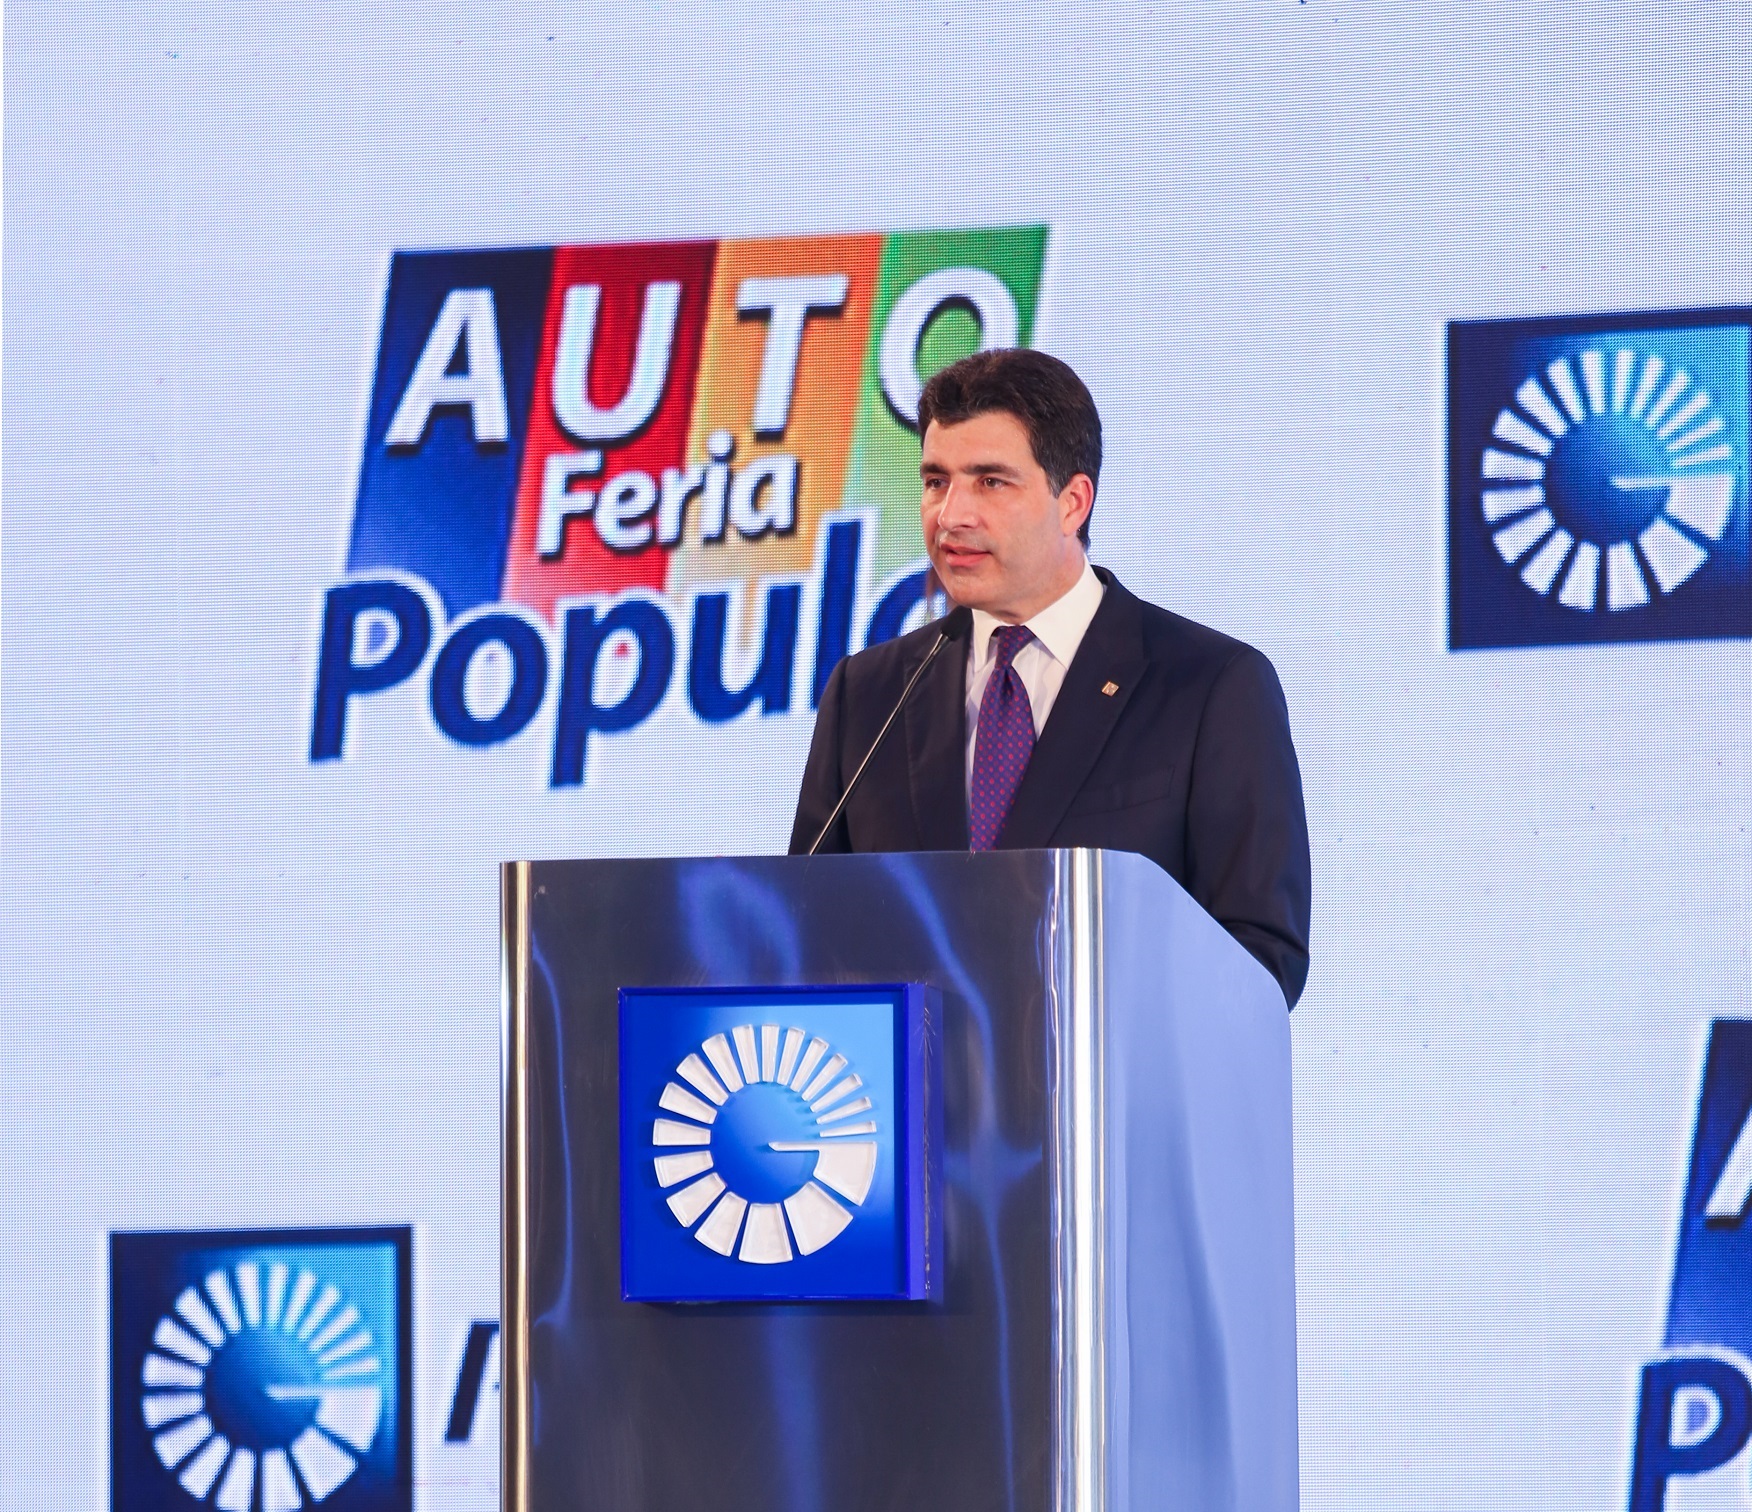 El señor Christopher Paniagua, vicepresidente ejecutivo senior de Negocios Nacionales e Internacionales del Popular, indicó que la Autoferia Popular es el evento más esperado del mercado automotriz en la República Dominicana.